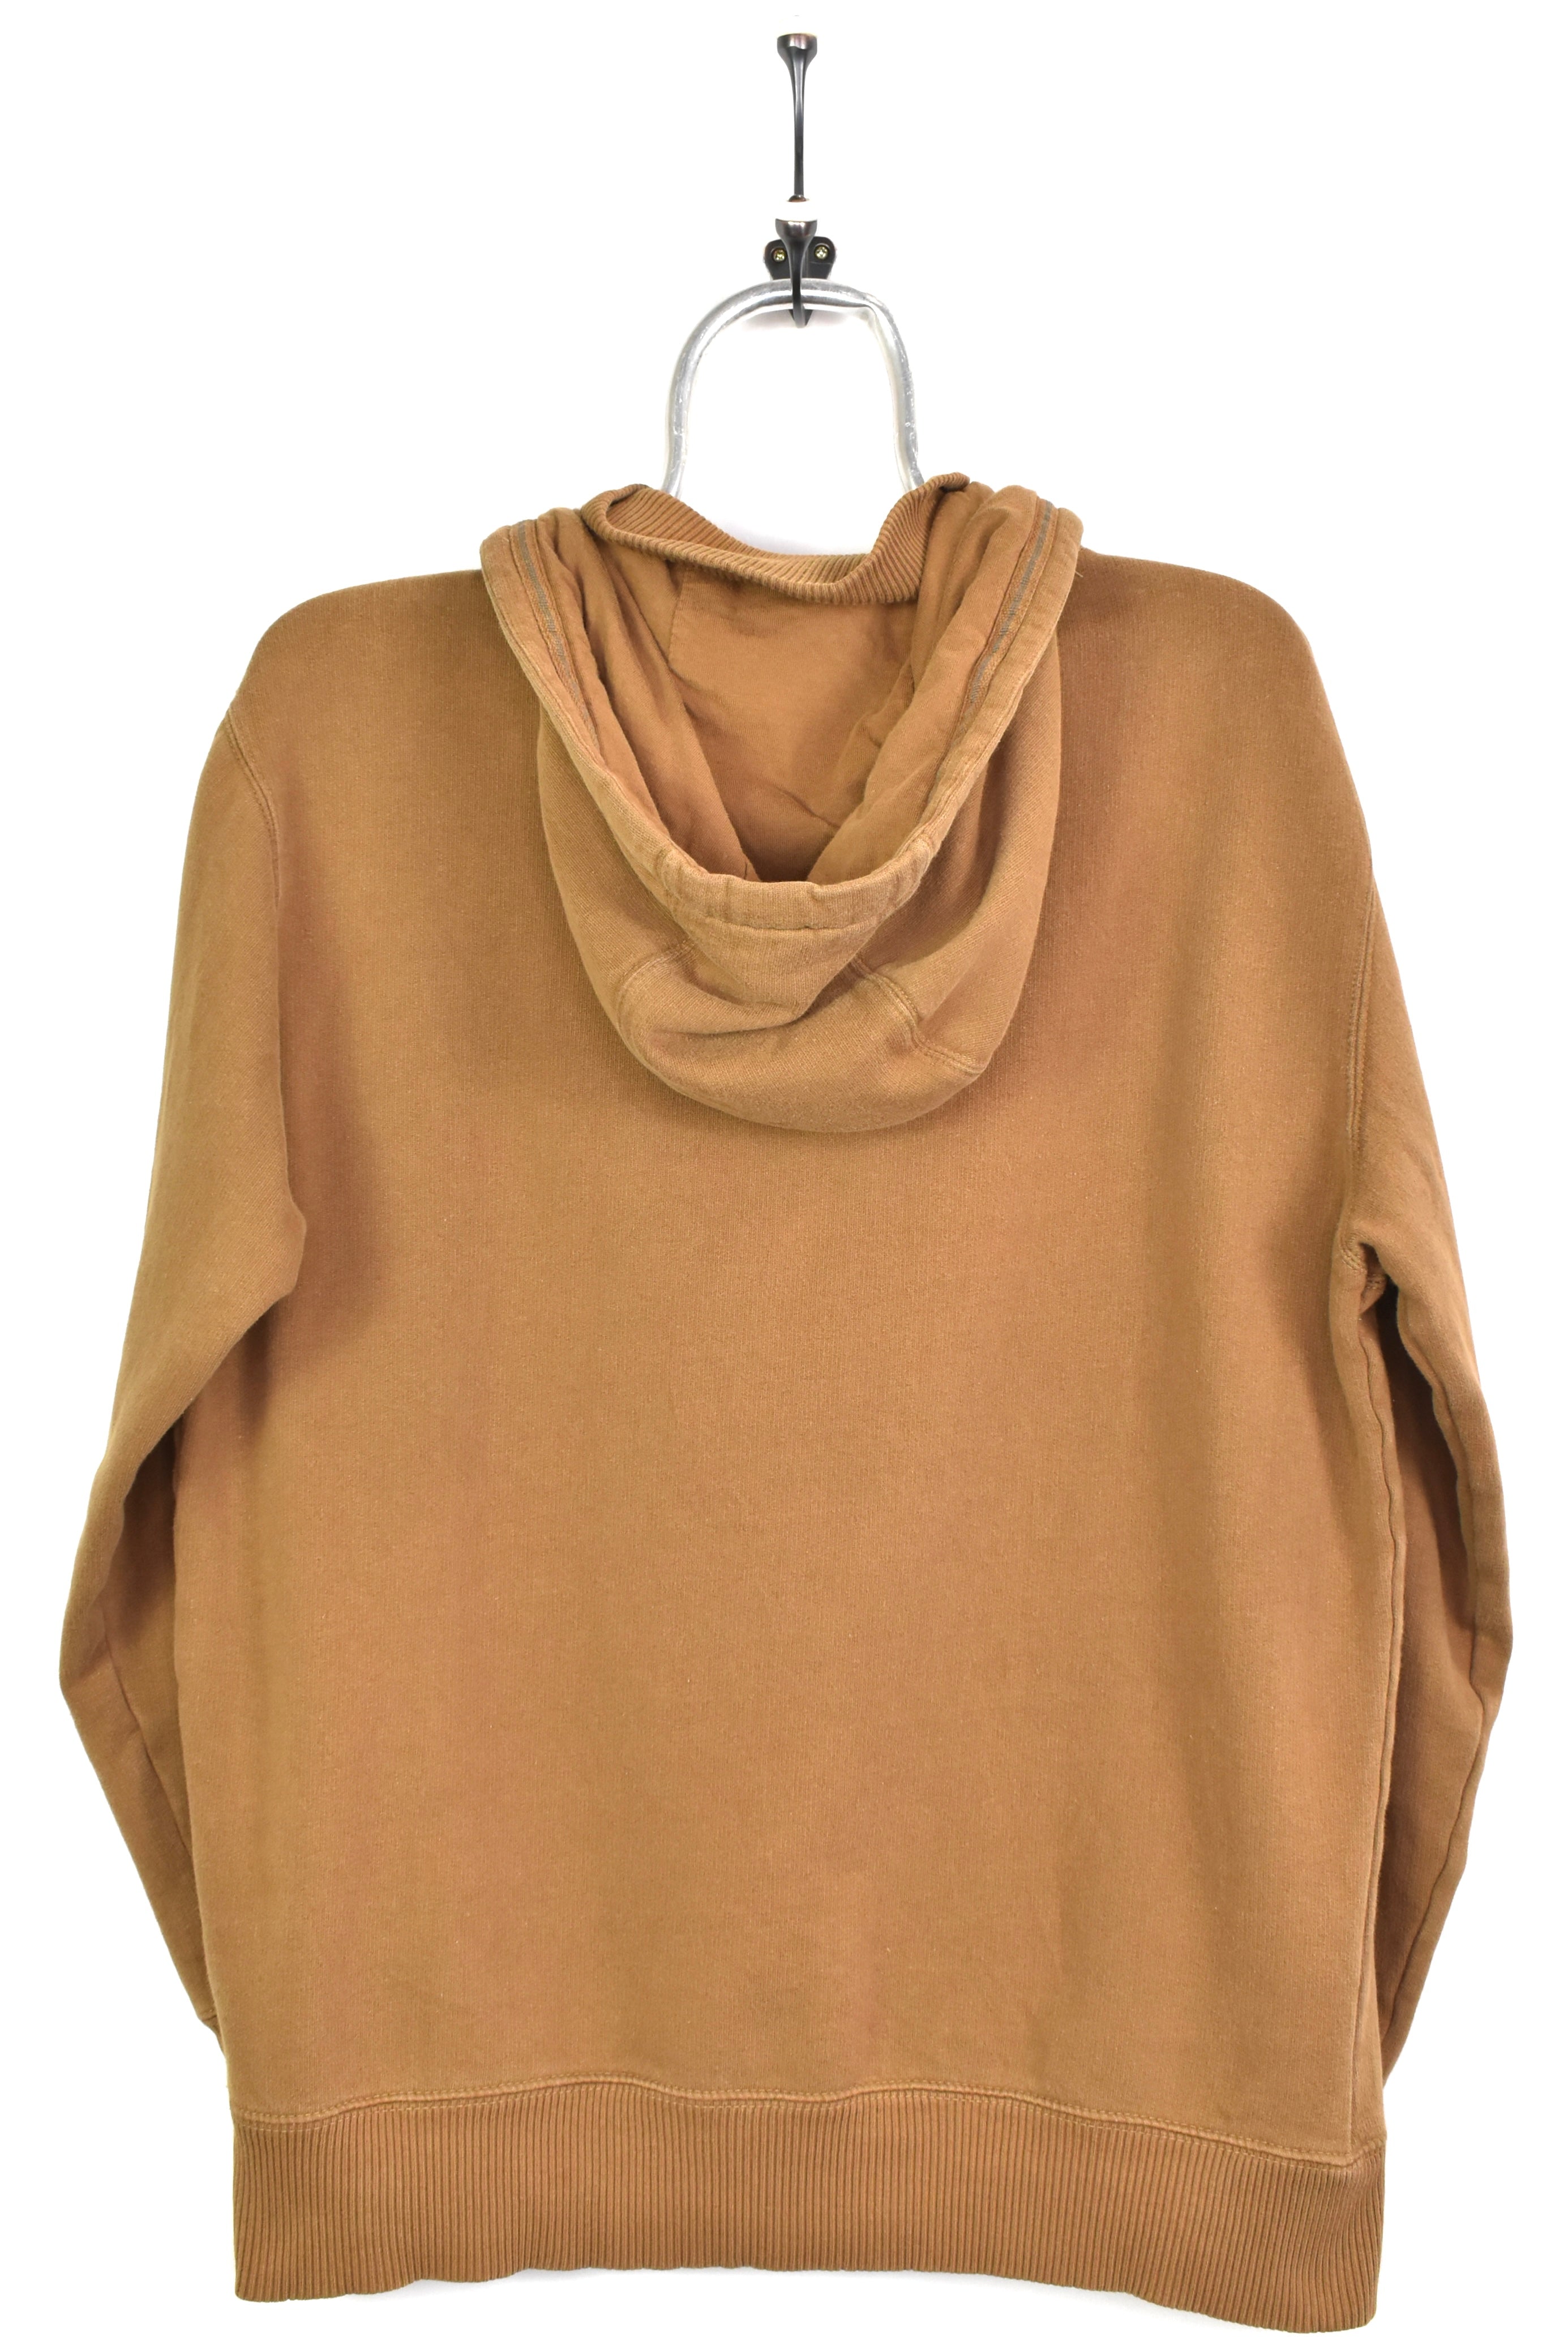 Vintage Gap hoodie, long sleeve brown 1/4 zip sweatshirt - AU M GAP